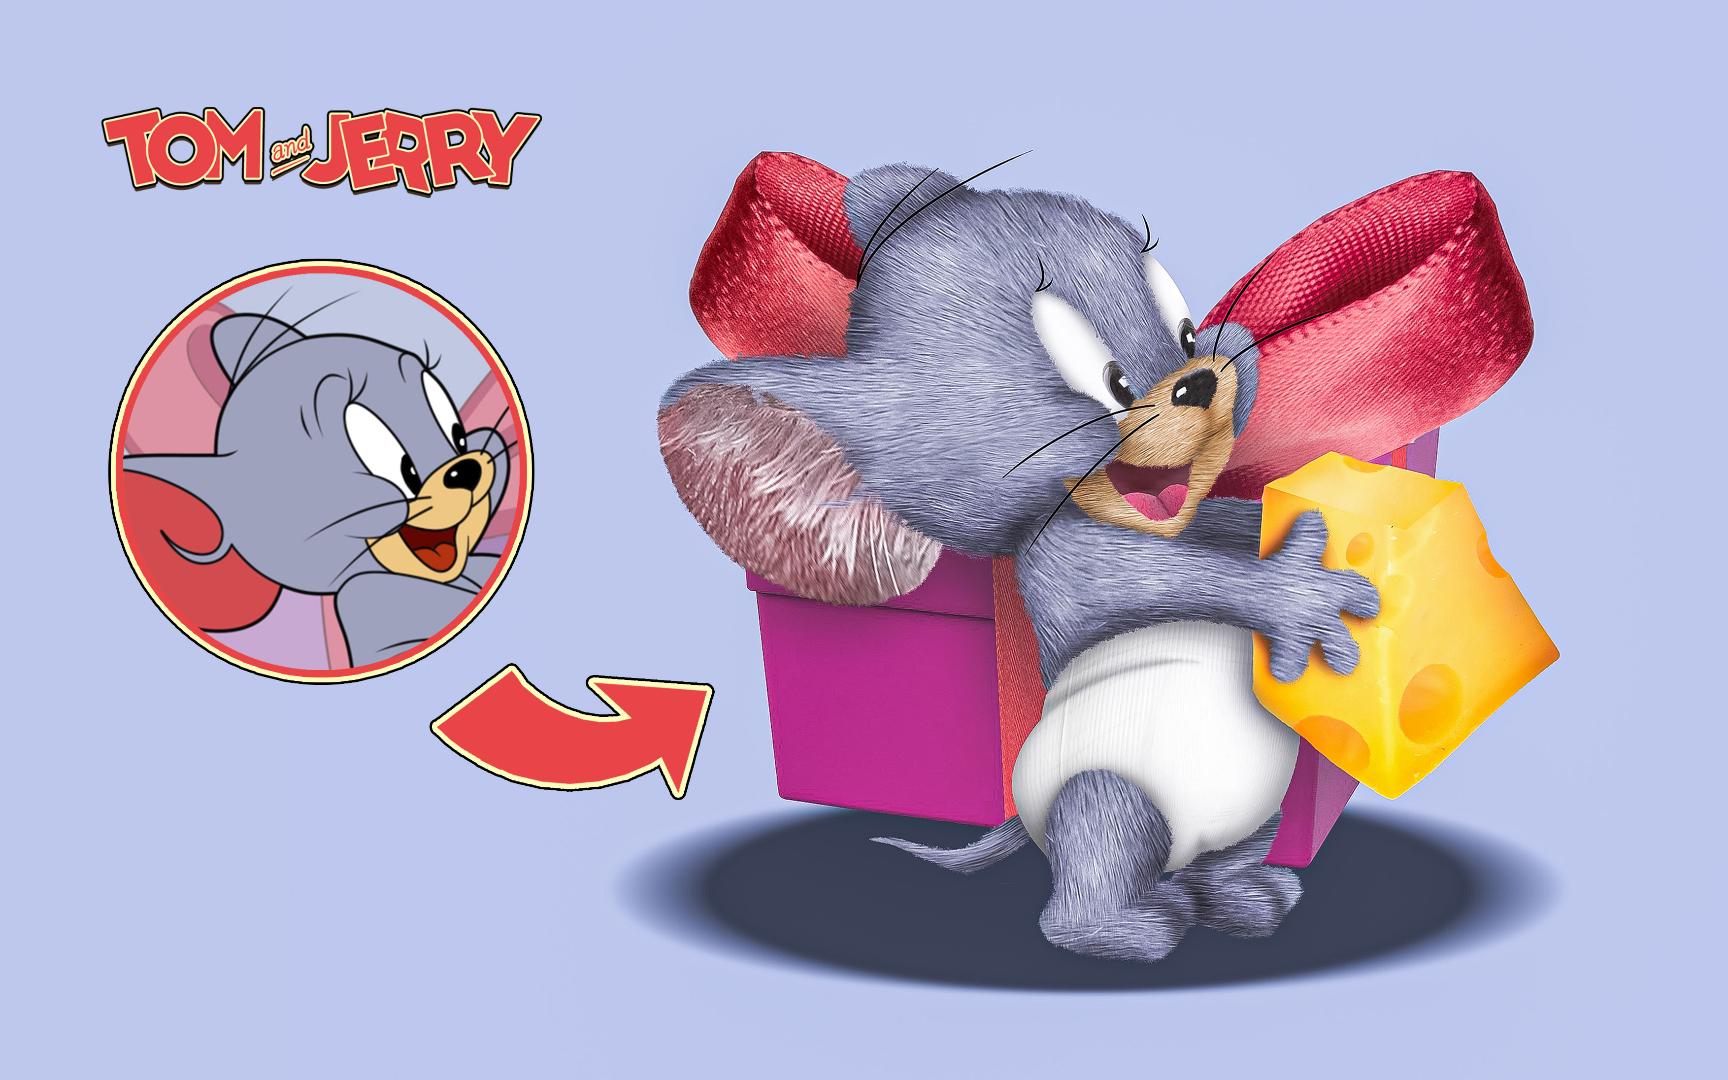 【真·猫和老鼠】完美还原泰菲角色海报!